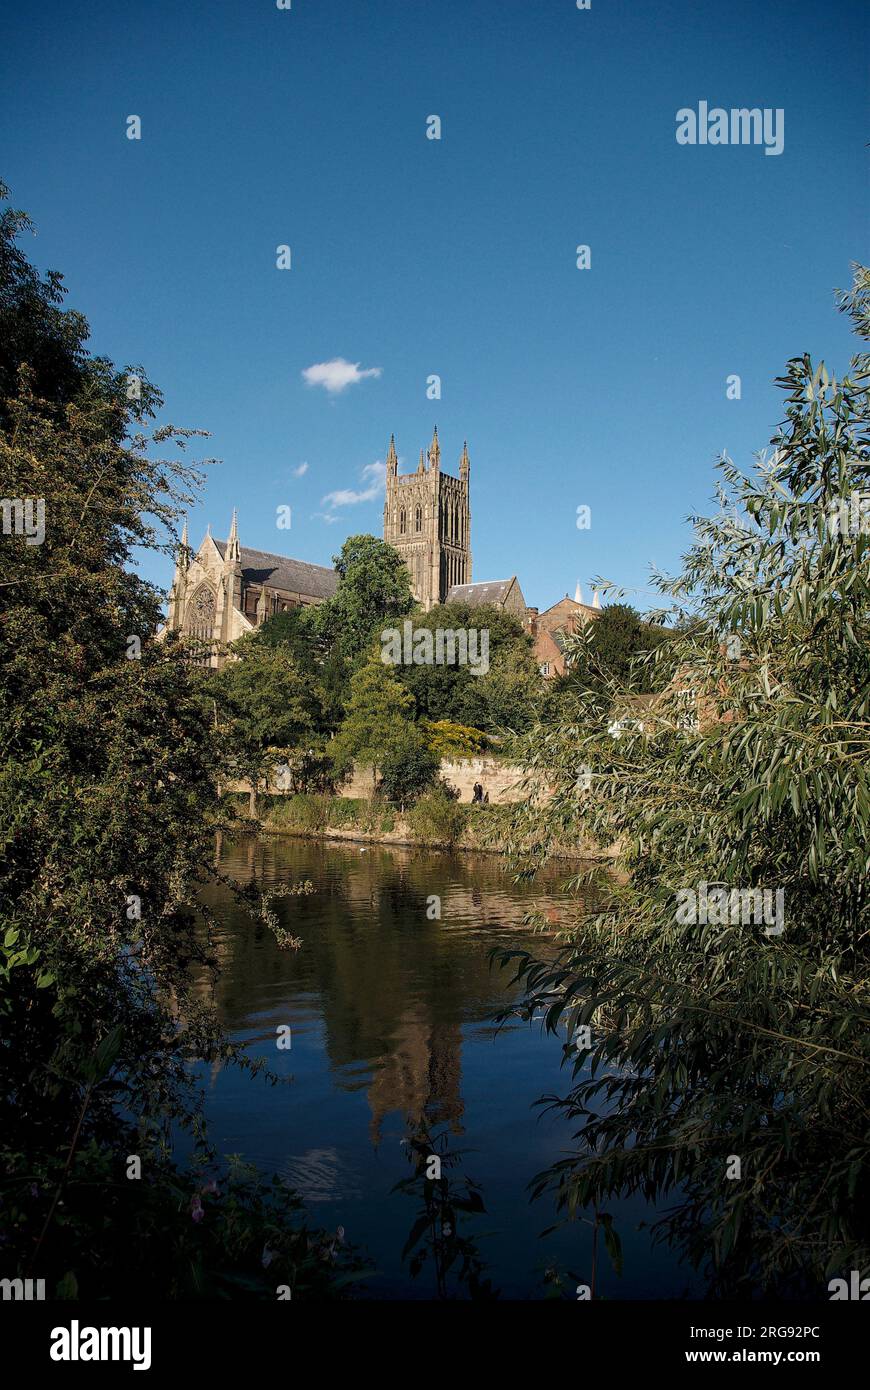 Vista della cattedrale di Worcester dall'altra parte del fiume Severn. La cattedrale fu costruita tra il 1084 e il 1504. Foto Stock